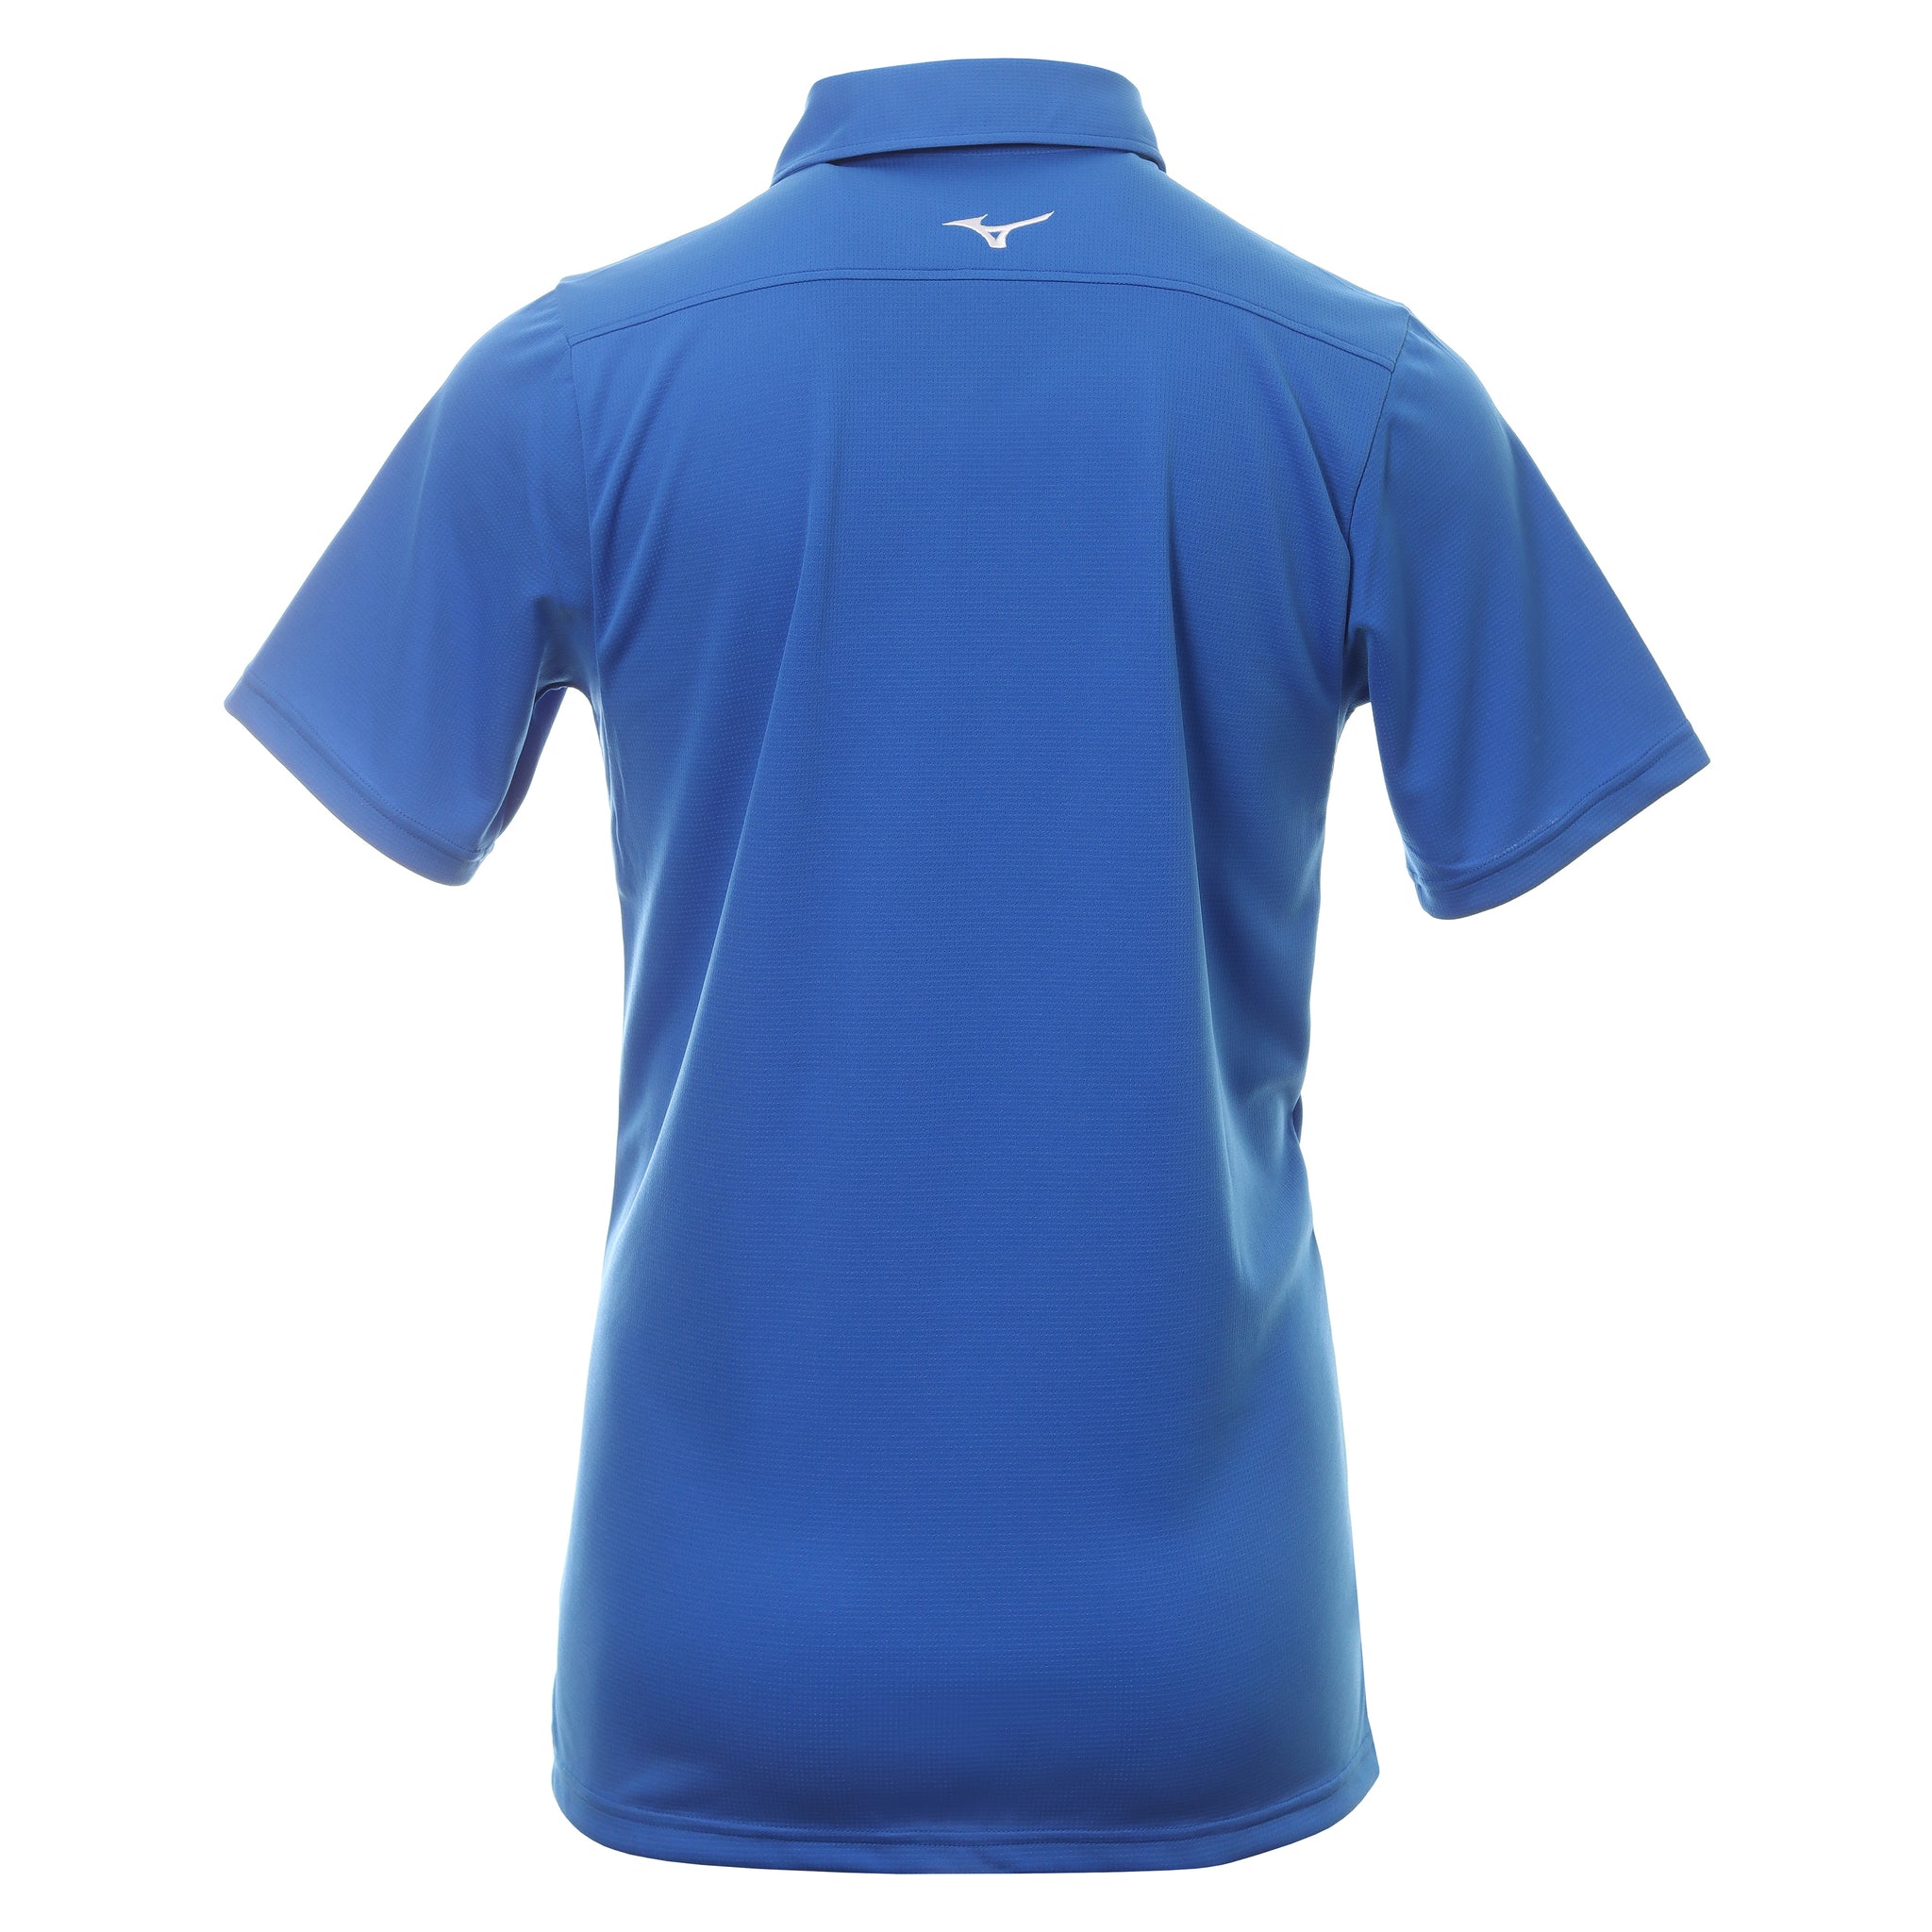 Mizuno Golf Breath Thermo Graphic Shirt